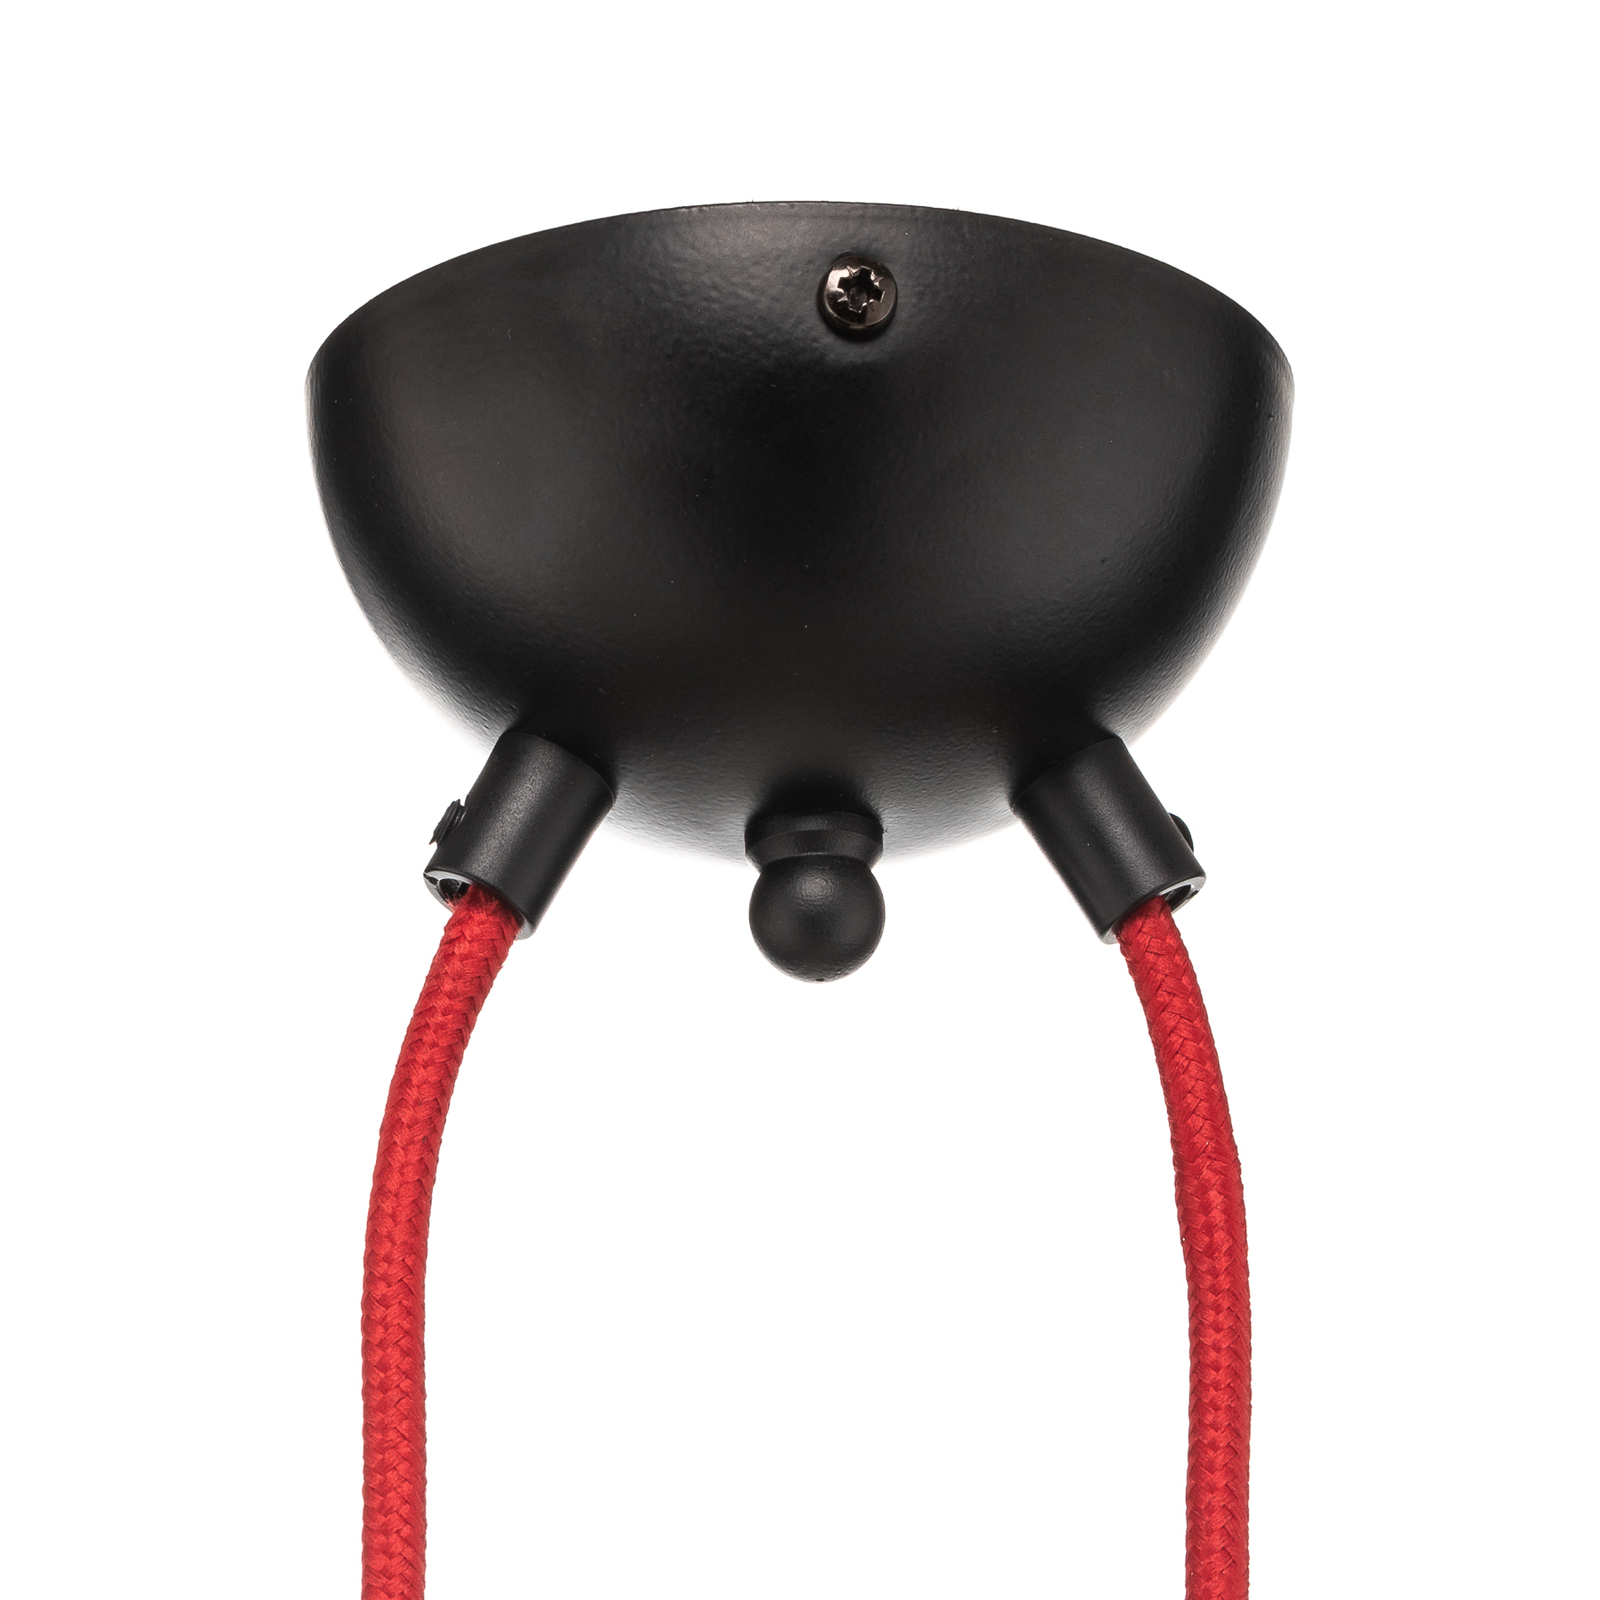 Bobi 2 visilica u crnoj boji, crveni kabel, 2 žarulje.